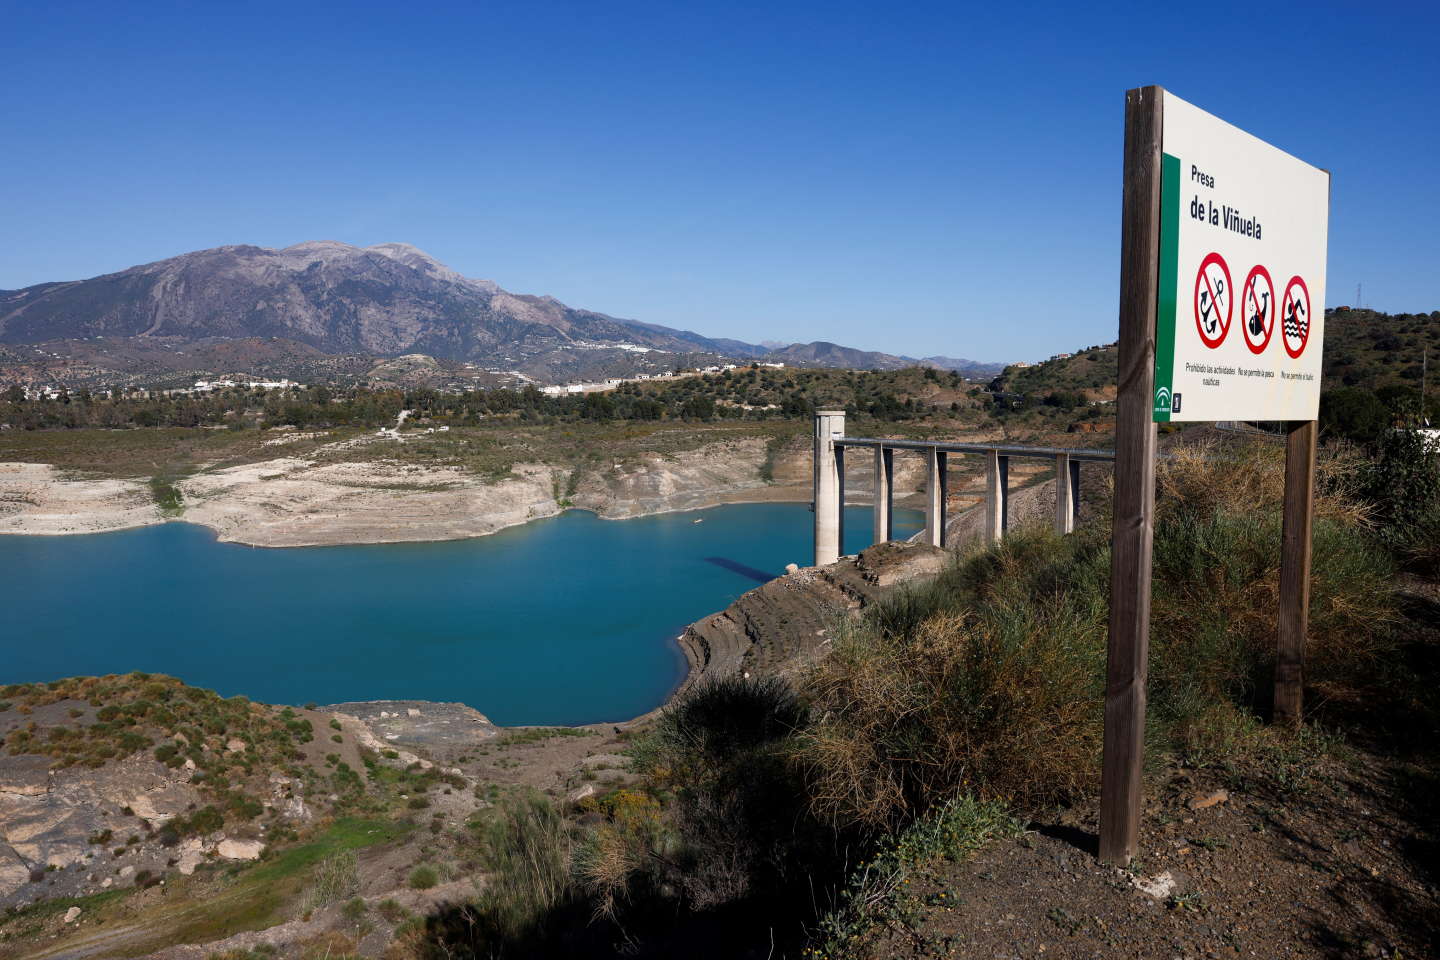 En Andalousie, 26 personnes arrêtées pour vol d’eau afin d’irriguer avocatiers et manguiers